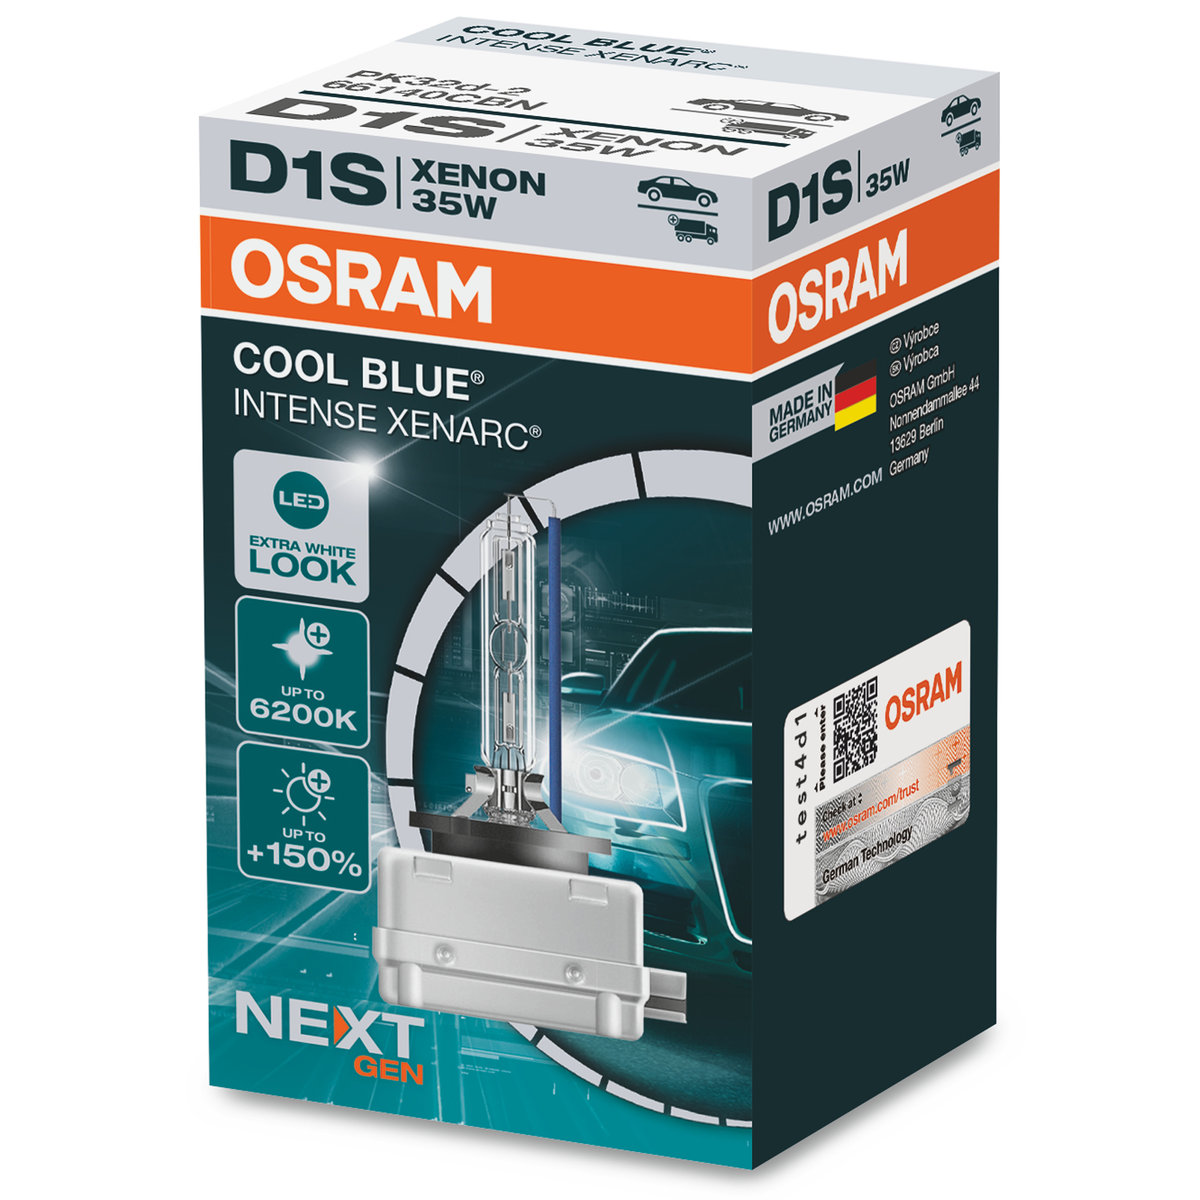 OSRAM XENARC COOL BLUE INTENSE D1S, +150% jaśniejsze światło, do 6200K, lampa ksenonowa, wygląd LED, kartonowe pudełko (1 lampa)